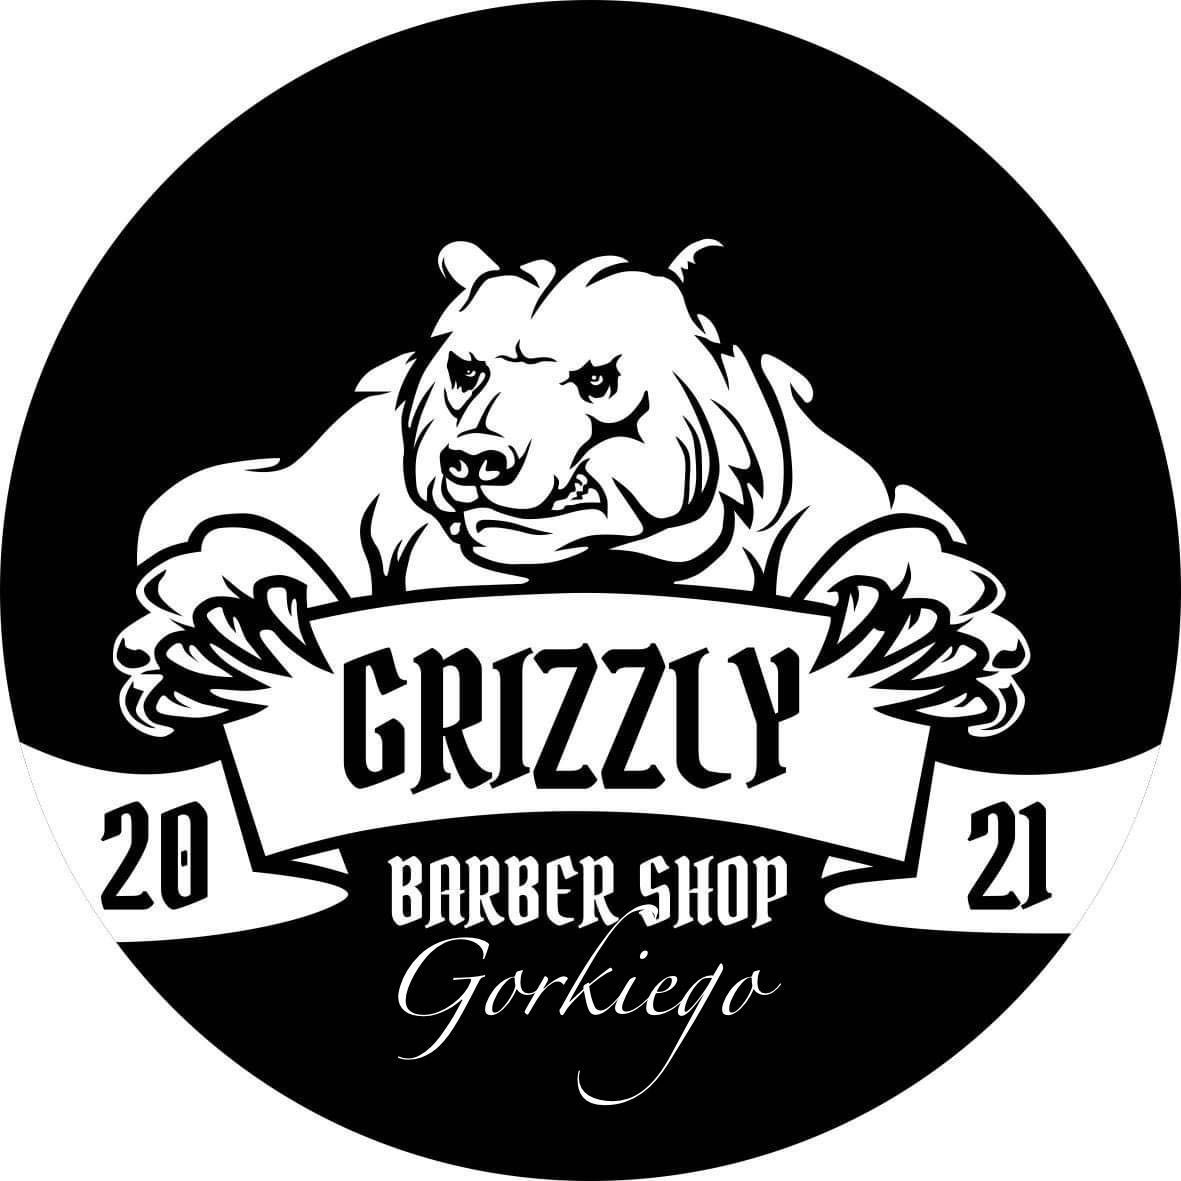 GRIZZLY BARBER SHOP GORKIEGO, Maksyma Gorkiego 5, 1, 70-390, Szczecin